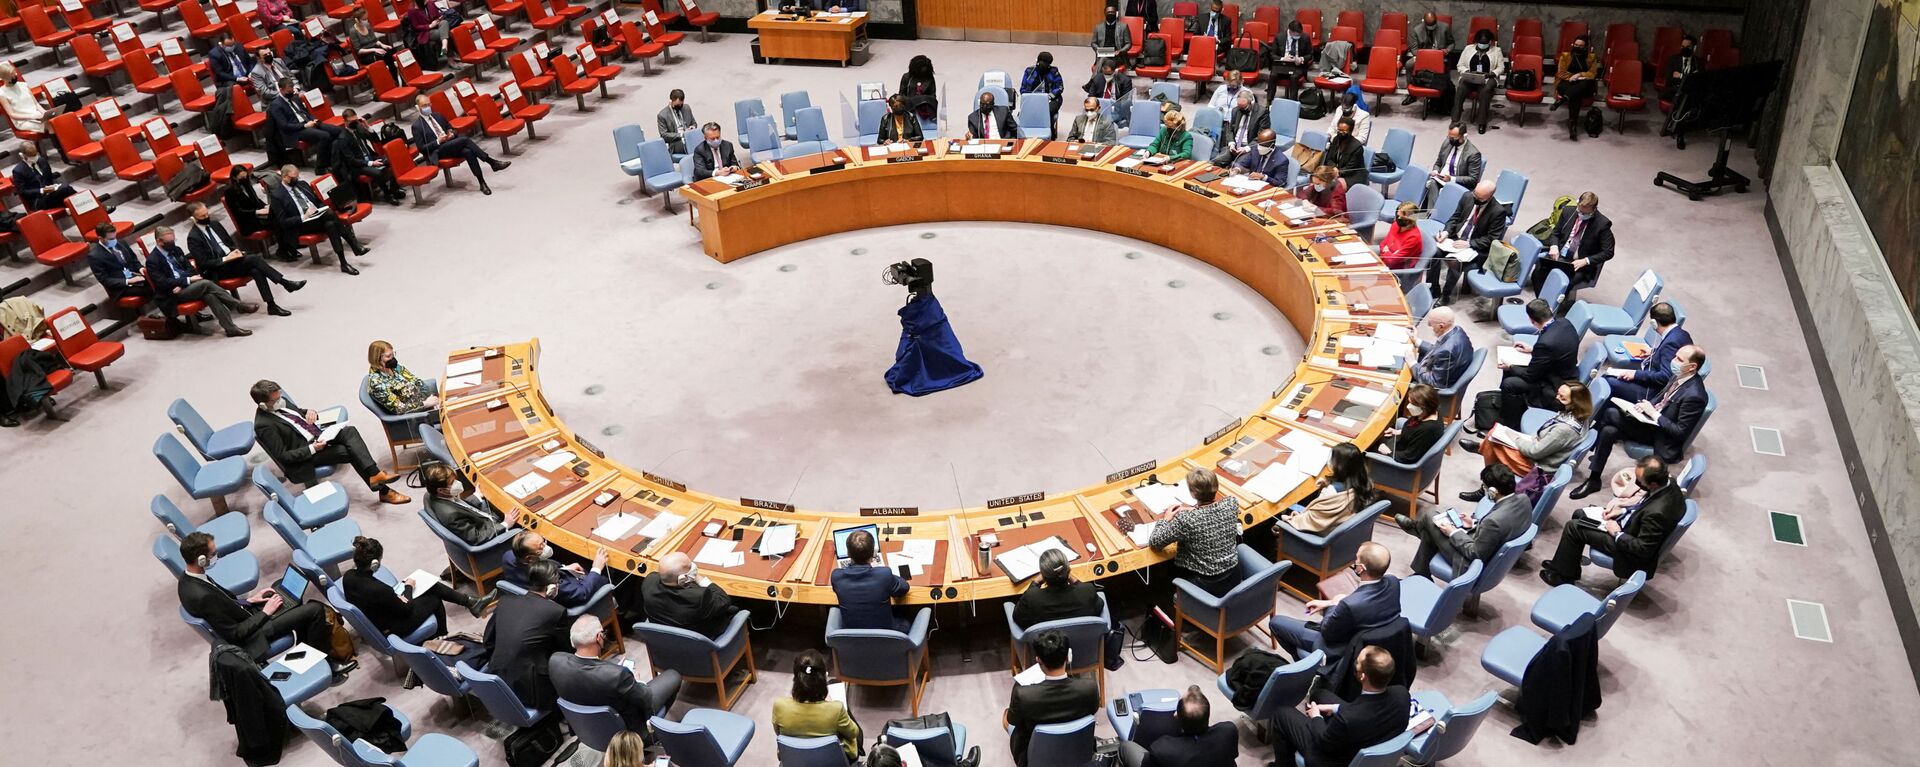  اجتماع مجلس الأمن التابع للأمم المتحدة بعد أن اعترفت روسيا بمنطقتين منفصلتين في شرق أوكرانيا ككيانين مستقلين، في مدينة نيويورك، الولايات المتحدة 21 فبراير 2022. - سبوتنيك عربي, 1920, 01.04.2023